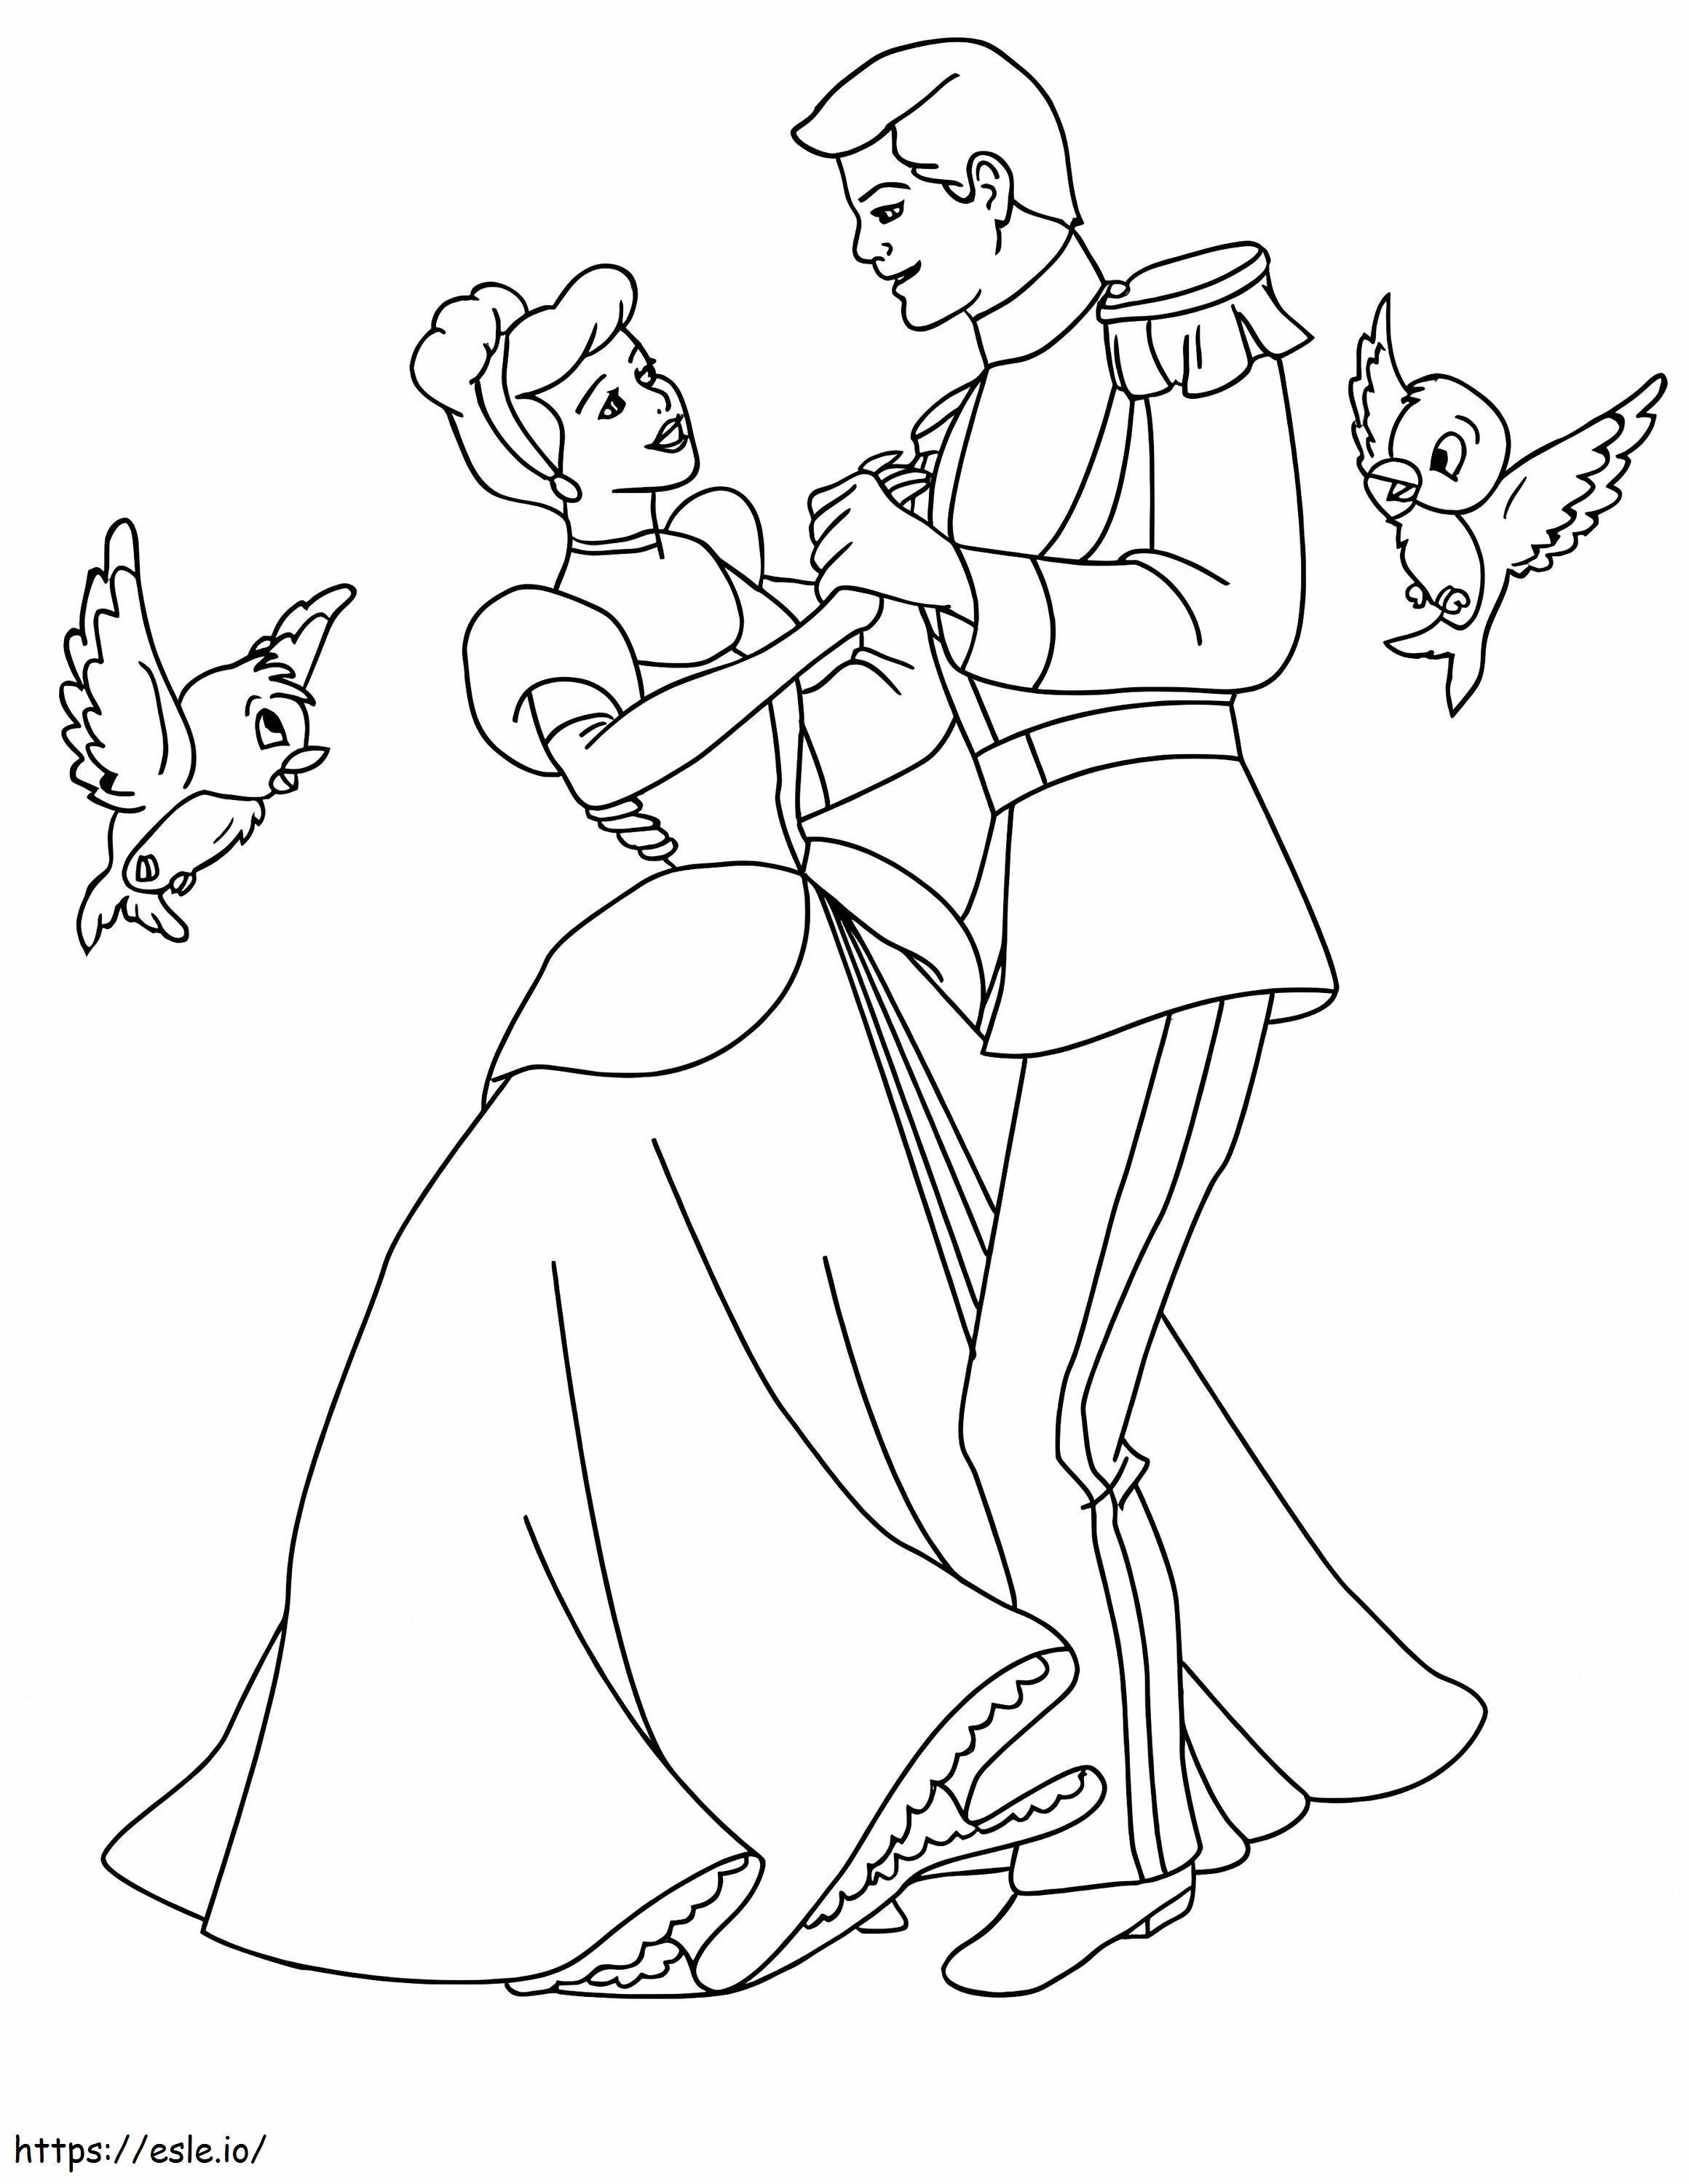 Kopciuszek tańczy z księciem kolorowanka